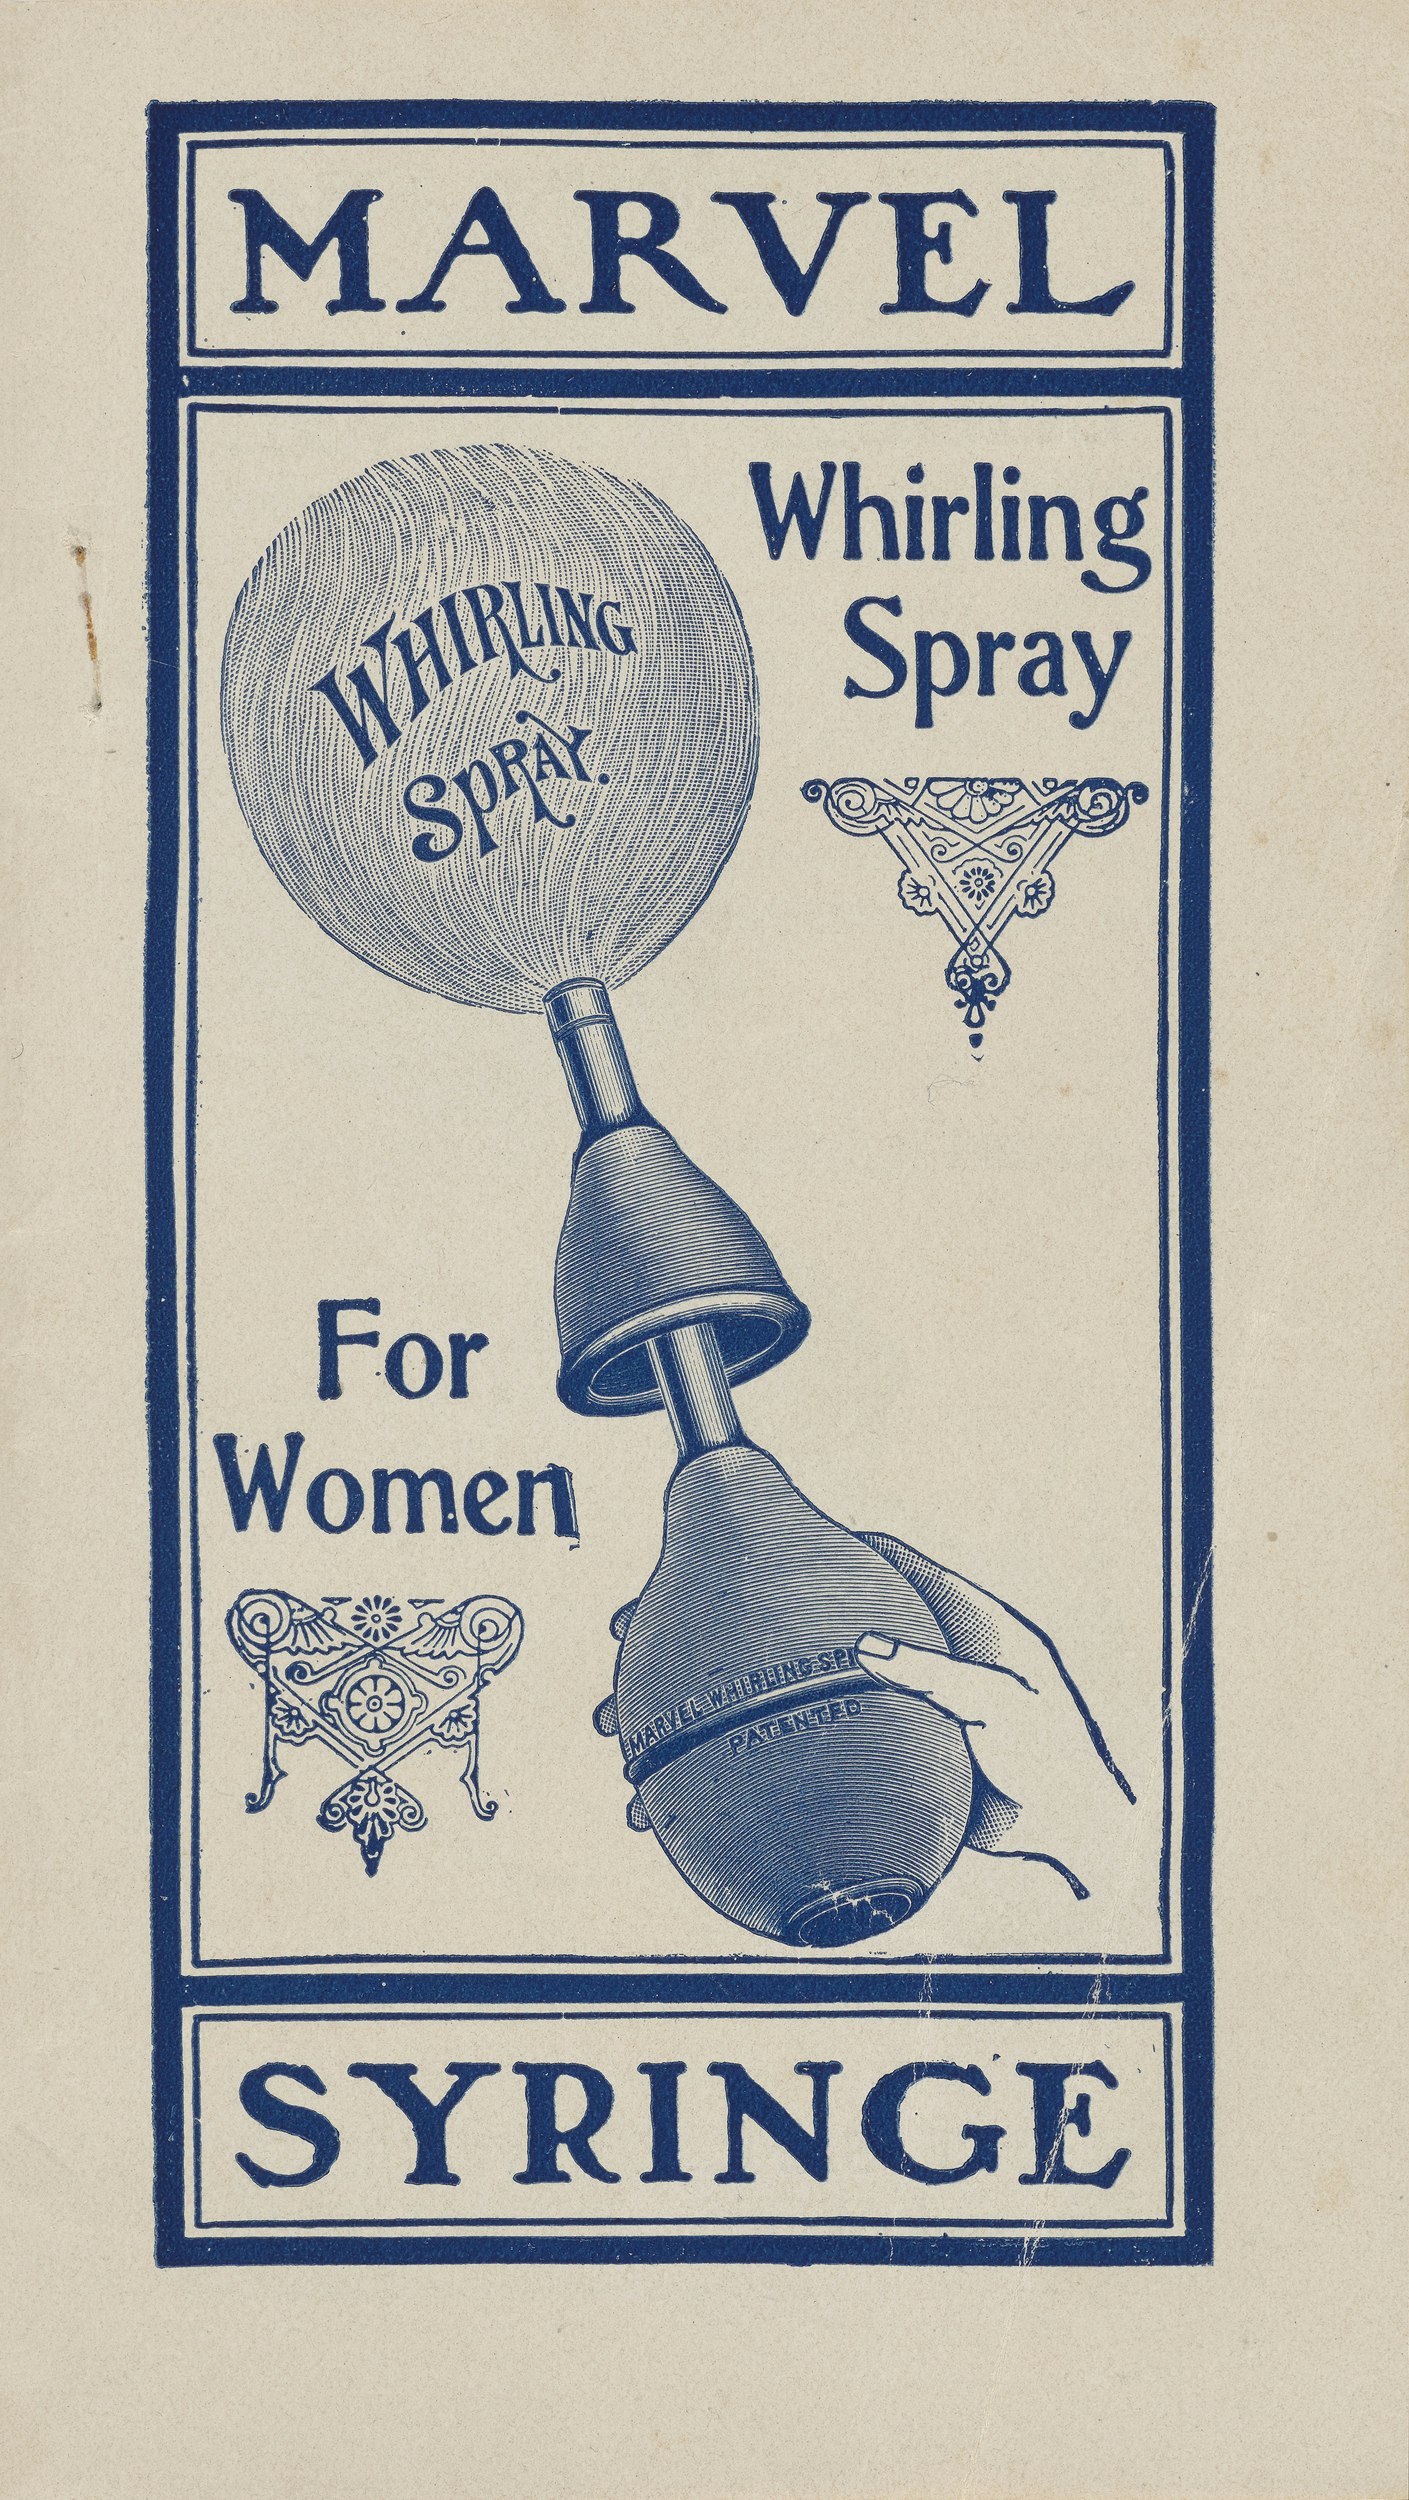 Marvel Syringe Whirling Spray For Women